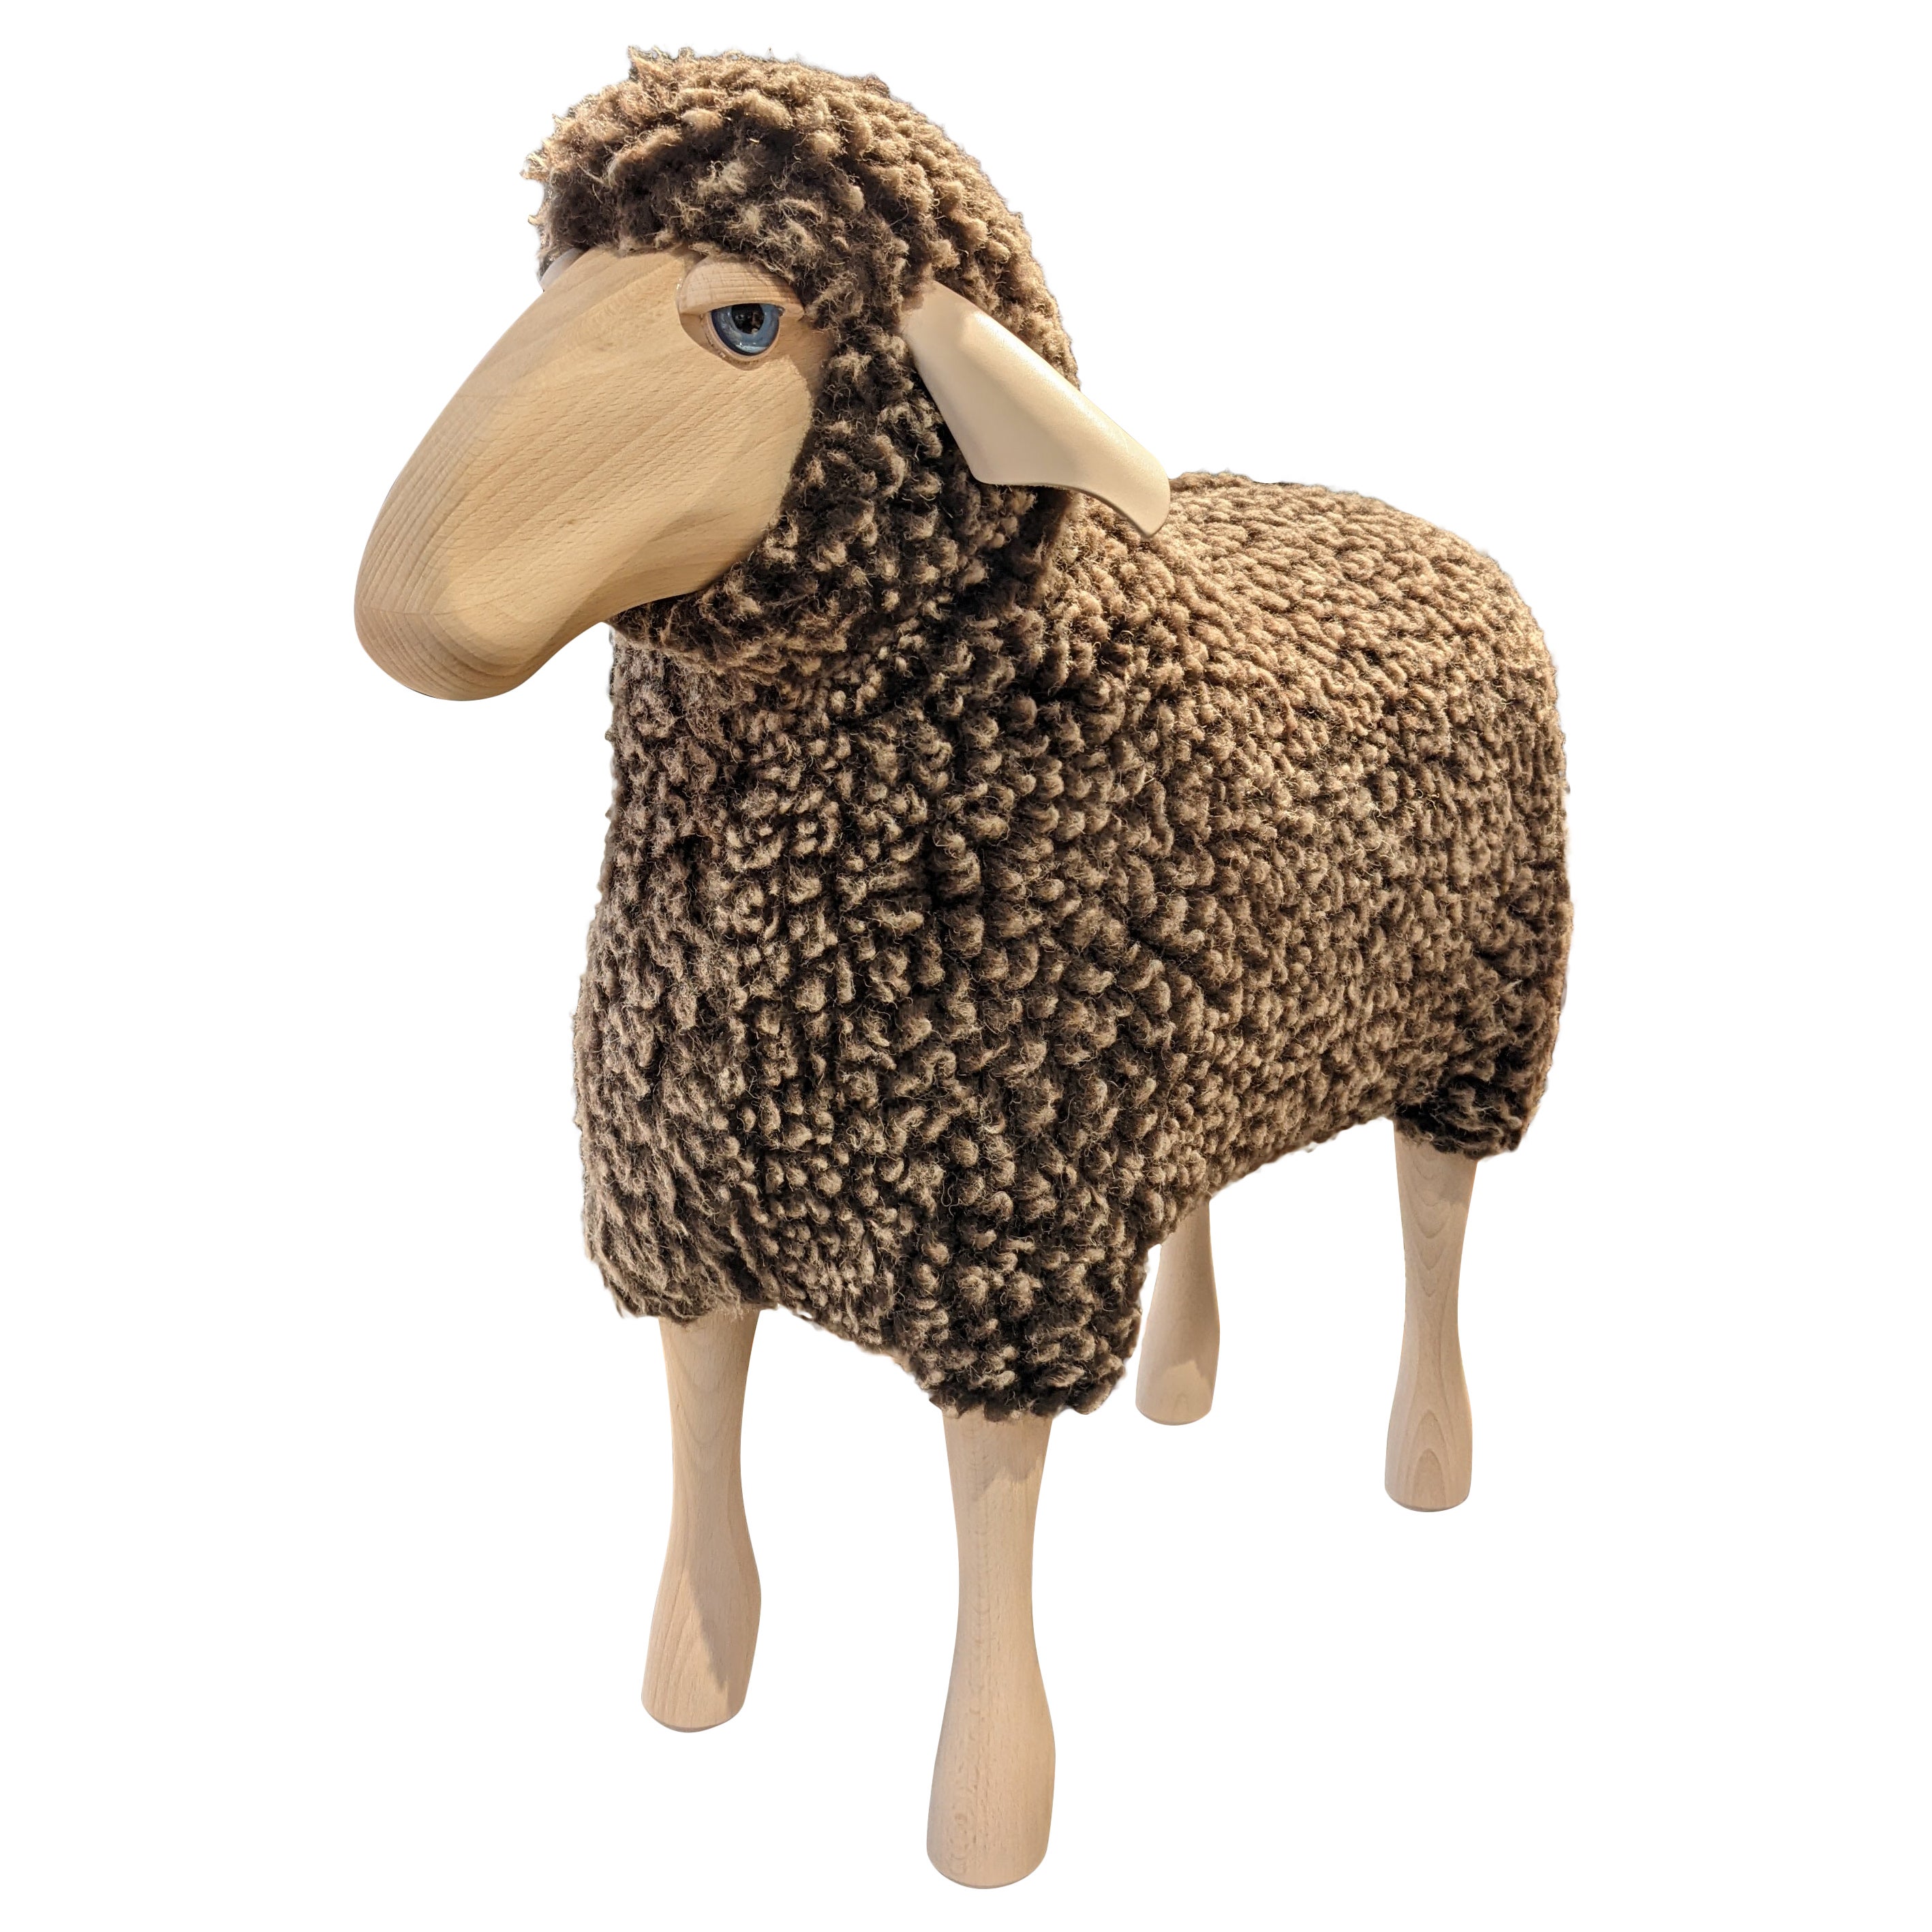 Sheep Sculpture, Brown Wool Plush, by Hans-Peter Krafft, Germany